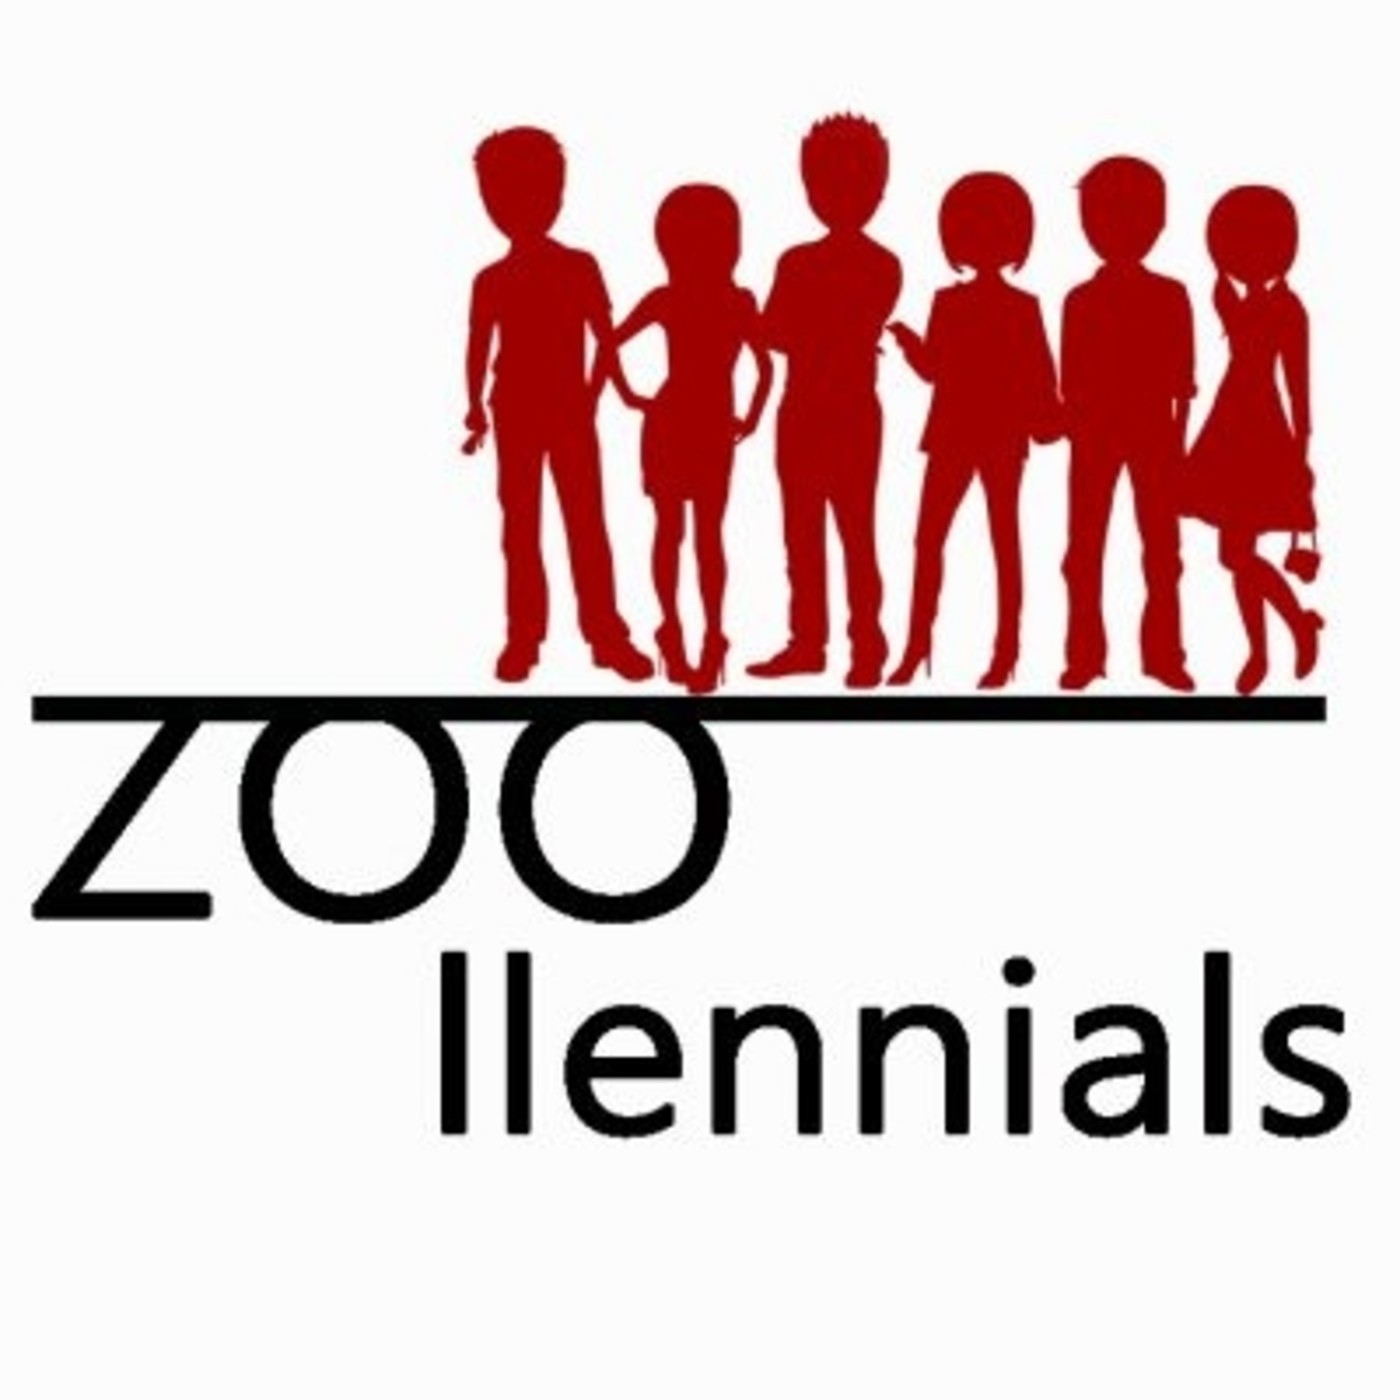 Zoollennials: De aquí a 20 años